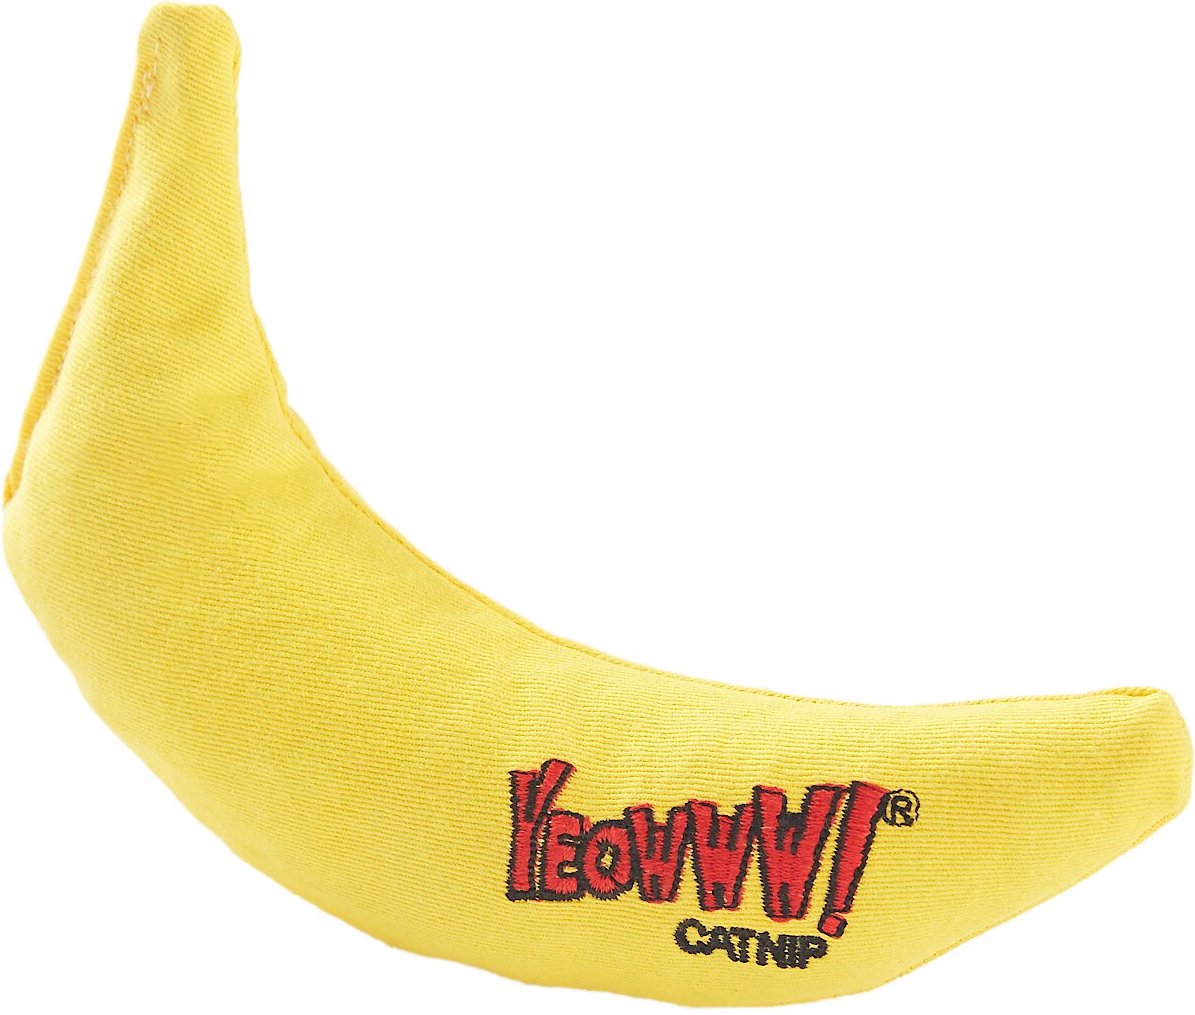 Yo! Yellow Banana Catnip Cat Toy